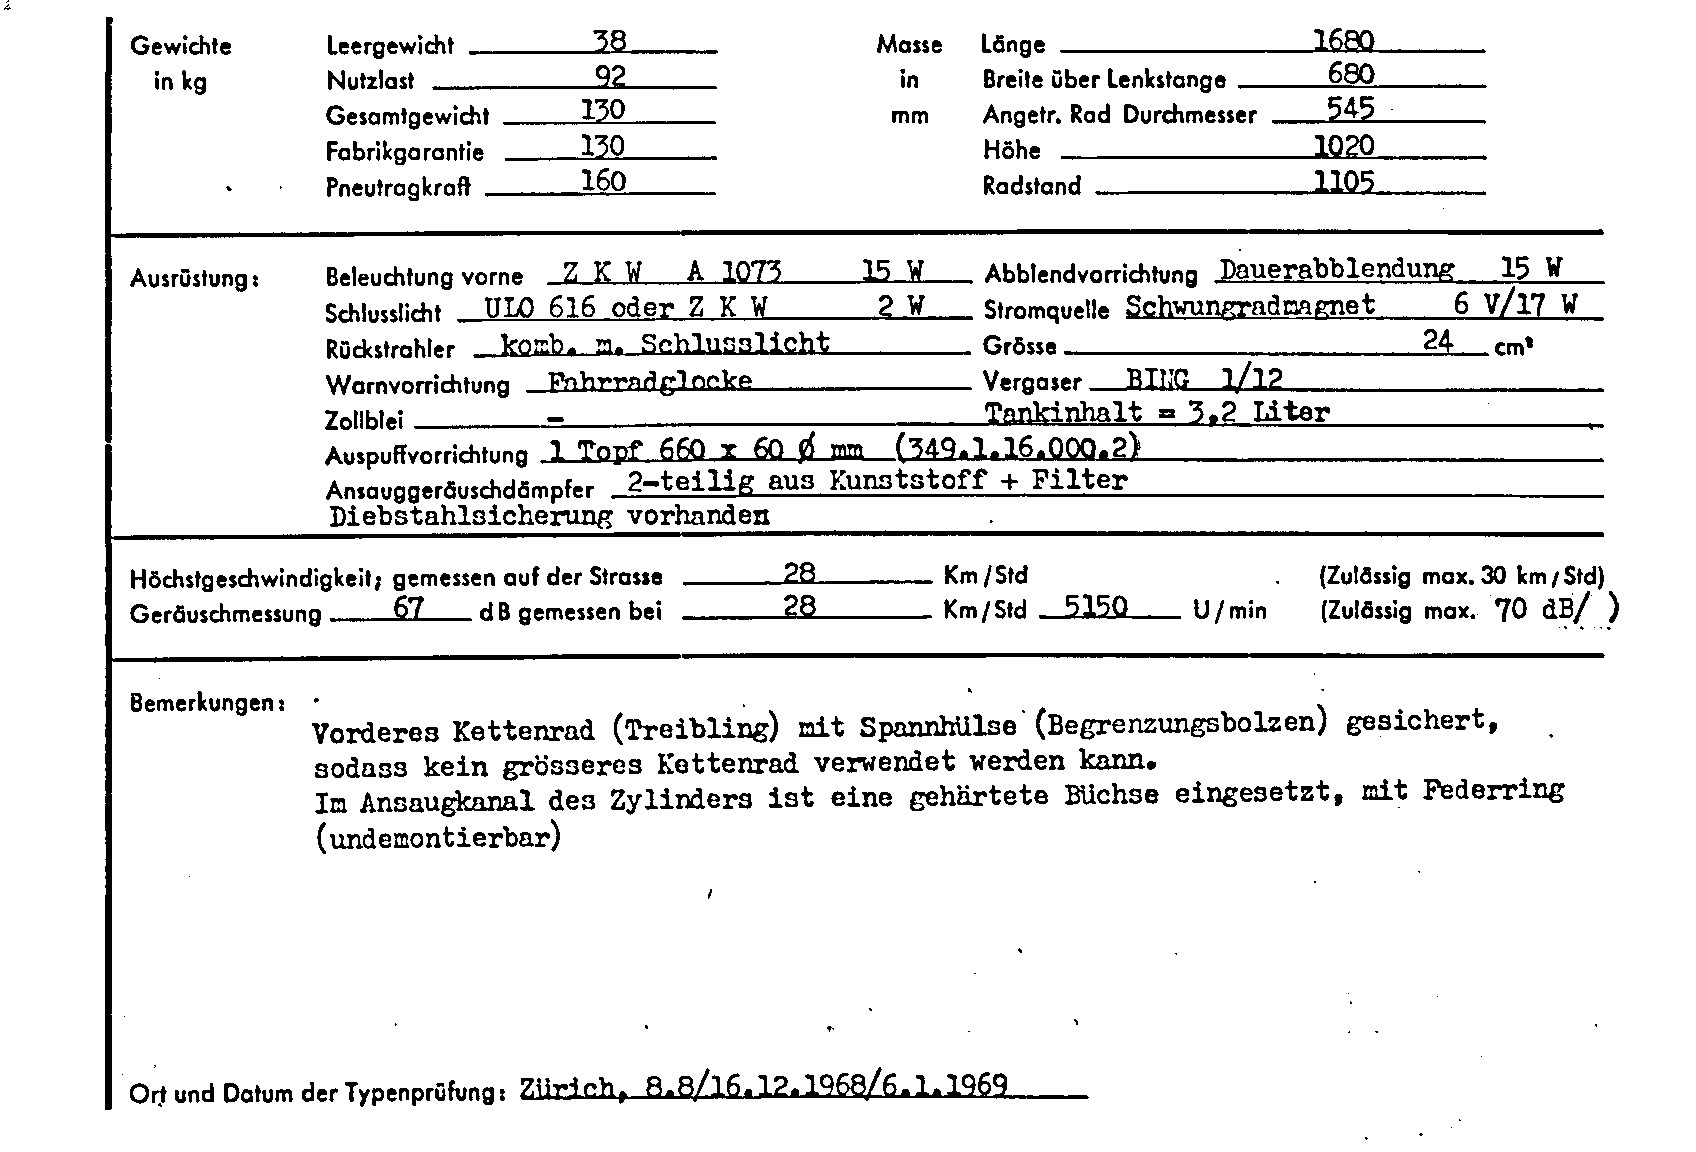 Suisse Fiche d'homologation 7029 Allemand Page 2 (TG.DE.7029.2.png)